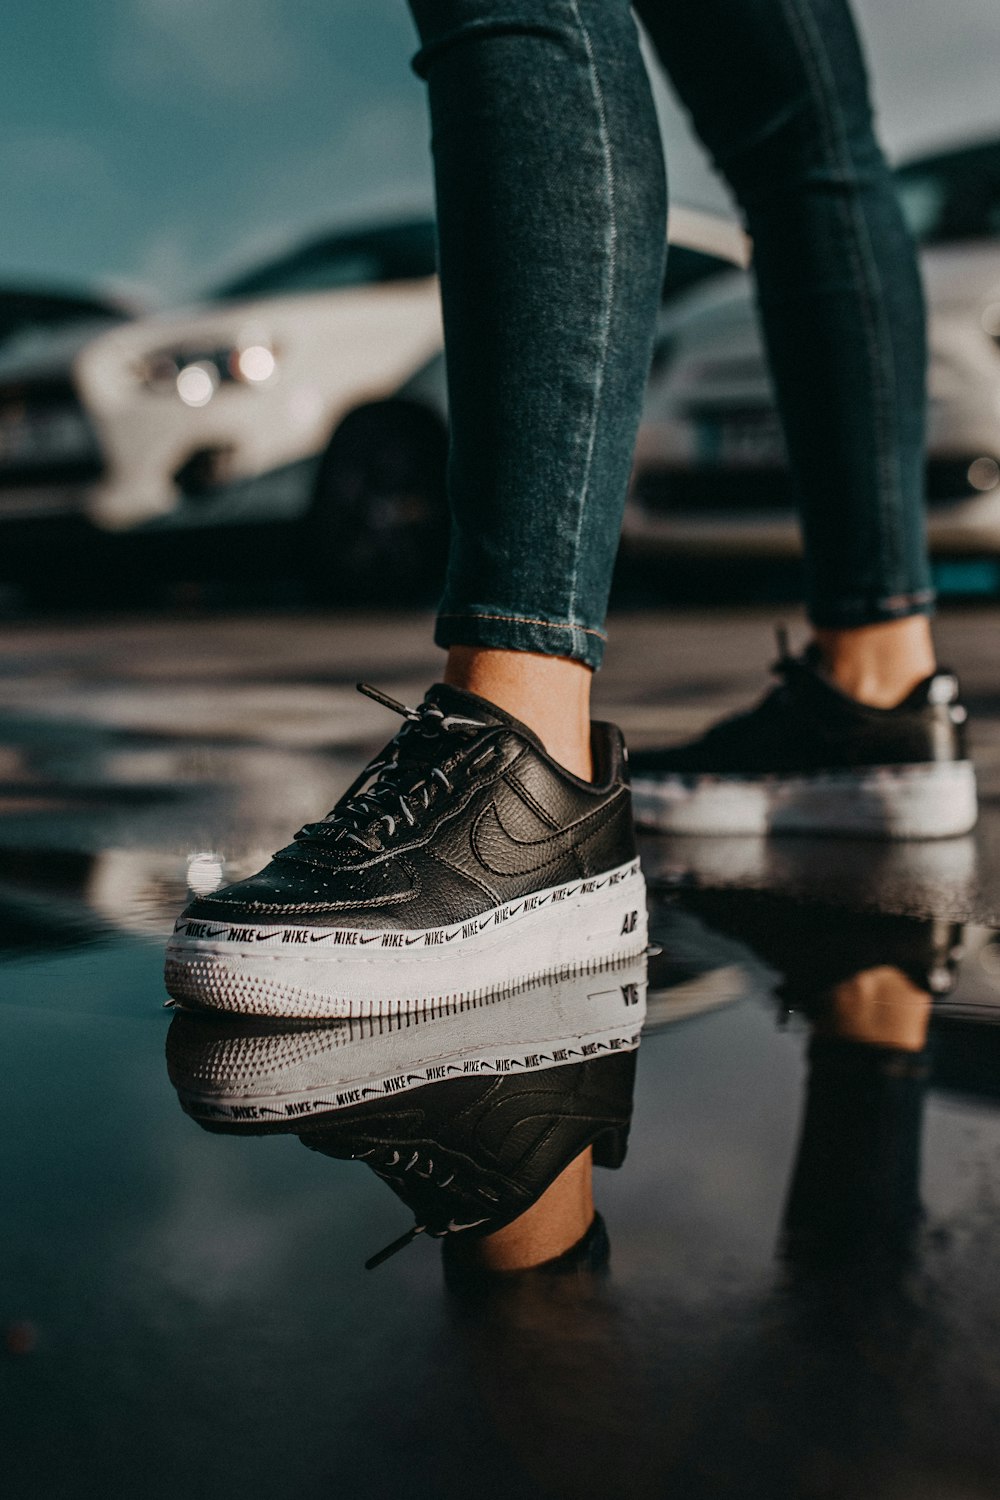 Foto Persona con zapatillas nike negras – Imagen Nike gratis en Unsplash